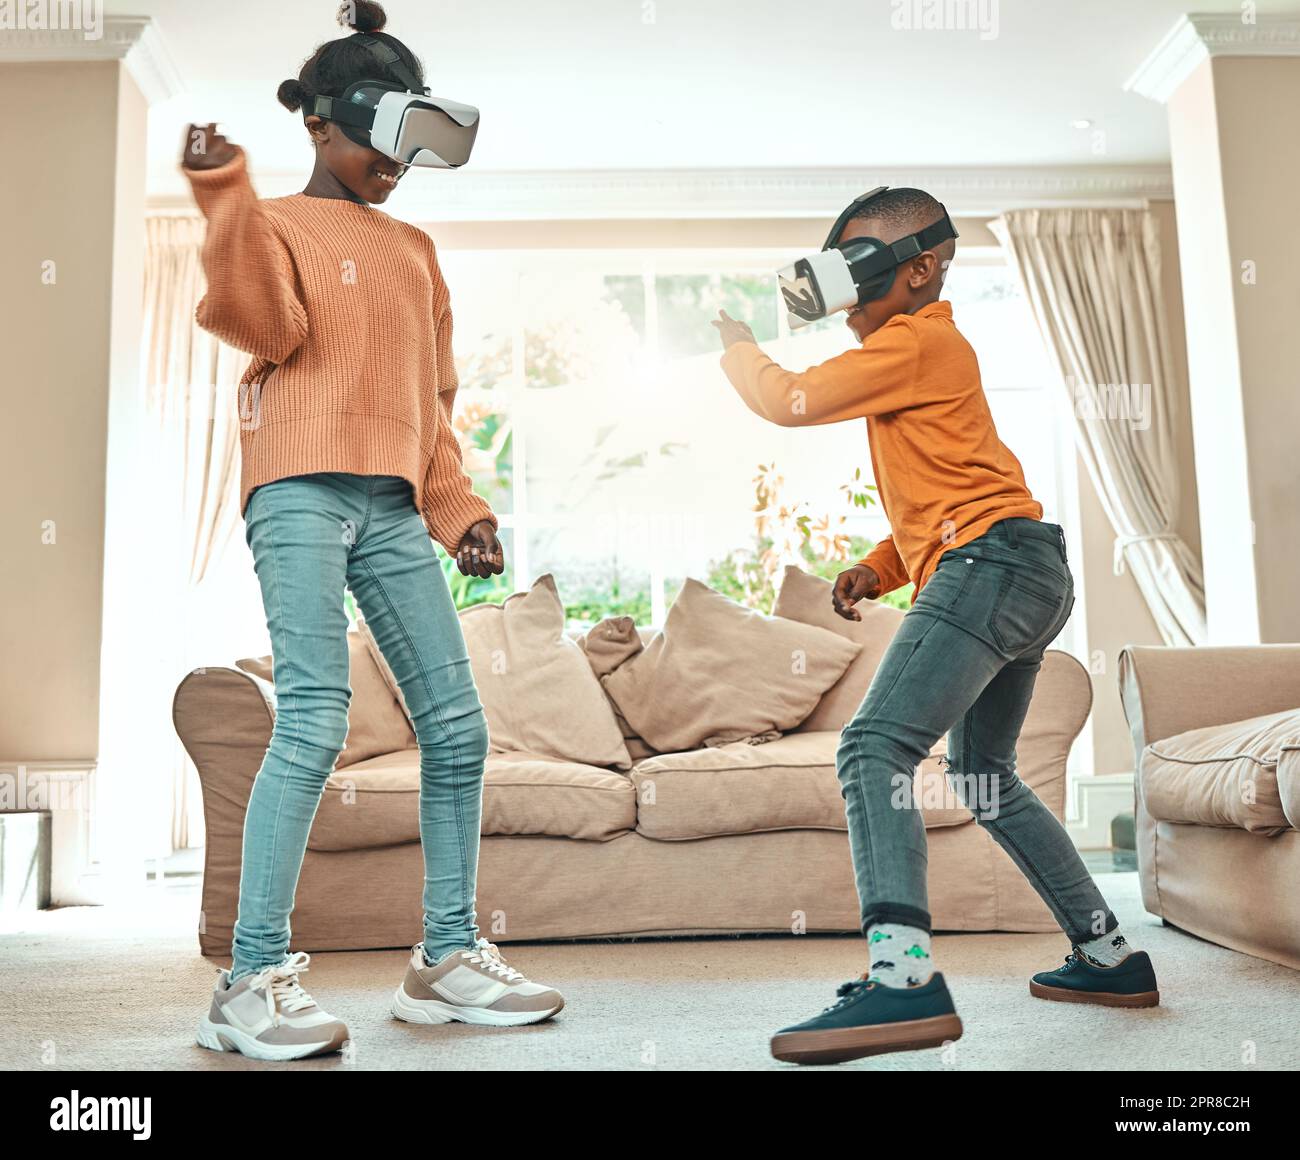 La technologie vous divertit. Un frère et une sœur jouent ensemble tout en portant des casques VR à la maison. Banque D'Images